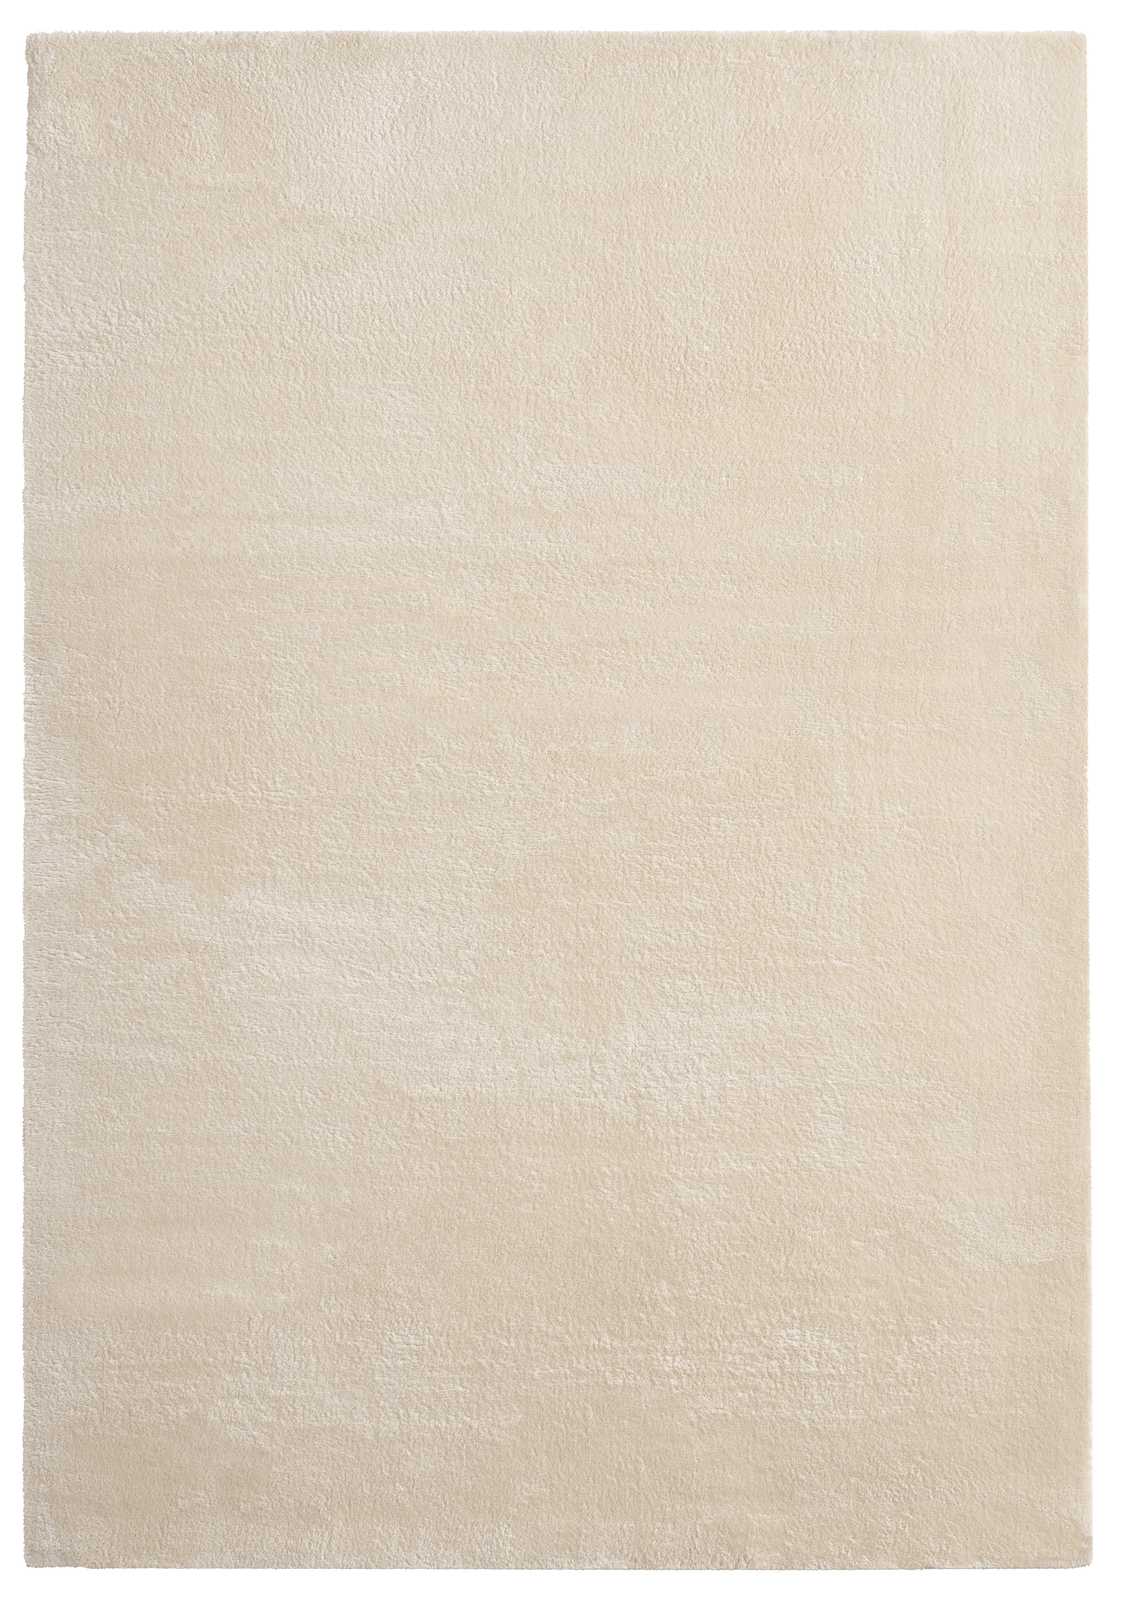             Soft high pile carpet in beige - 110 x 60 cm
        